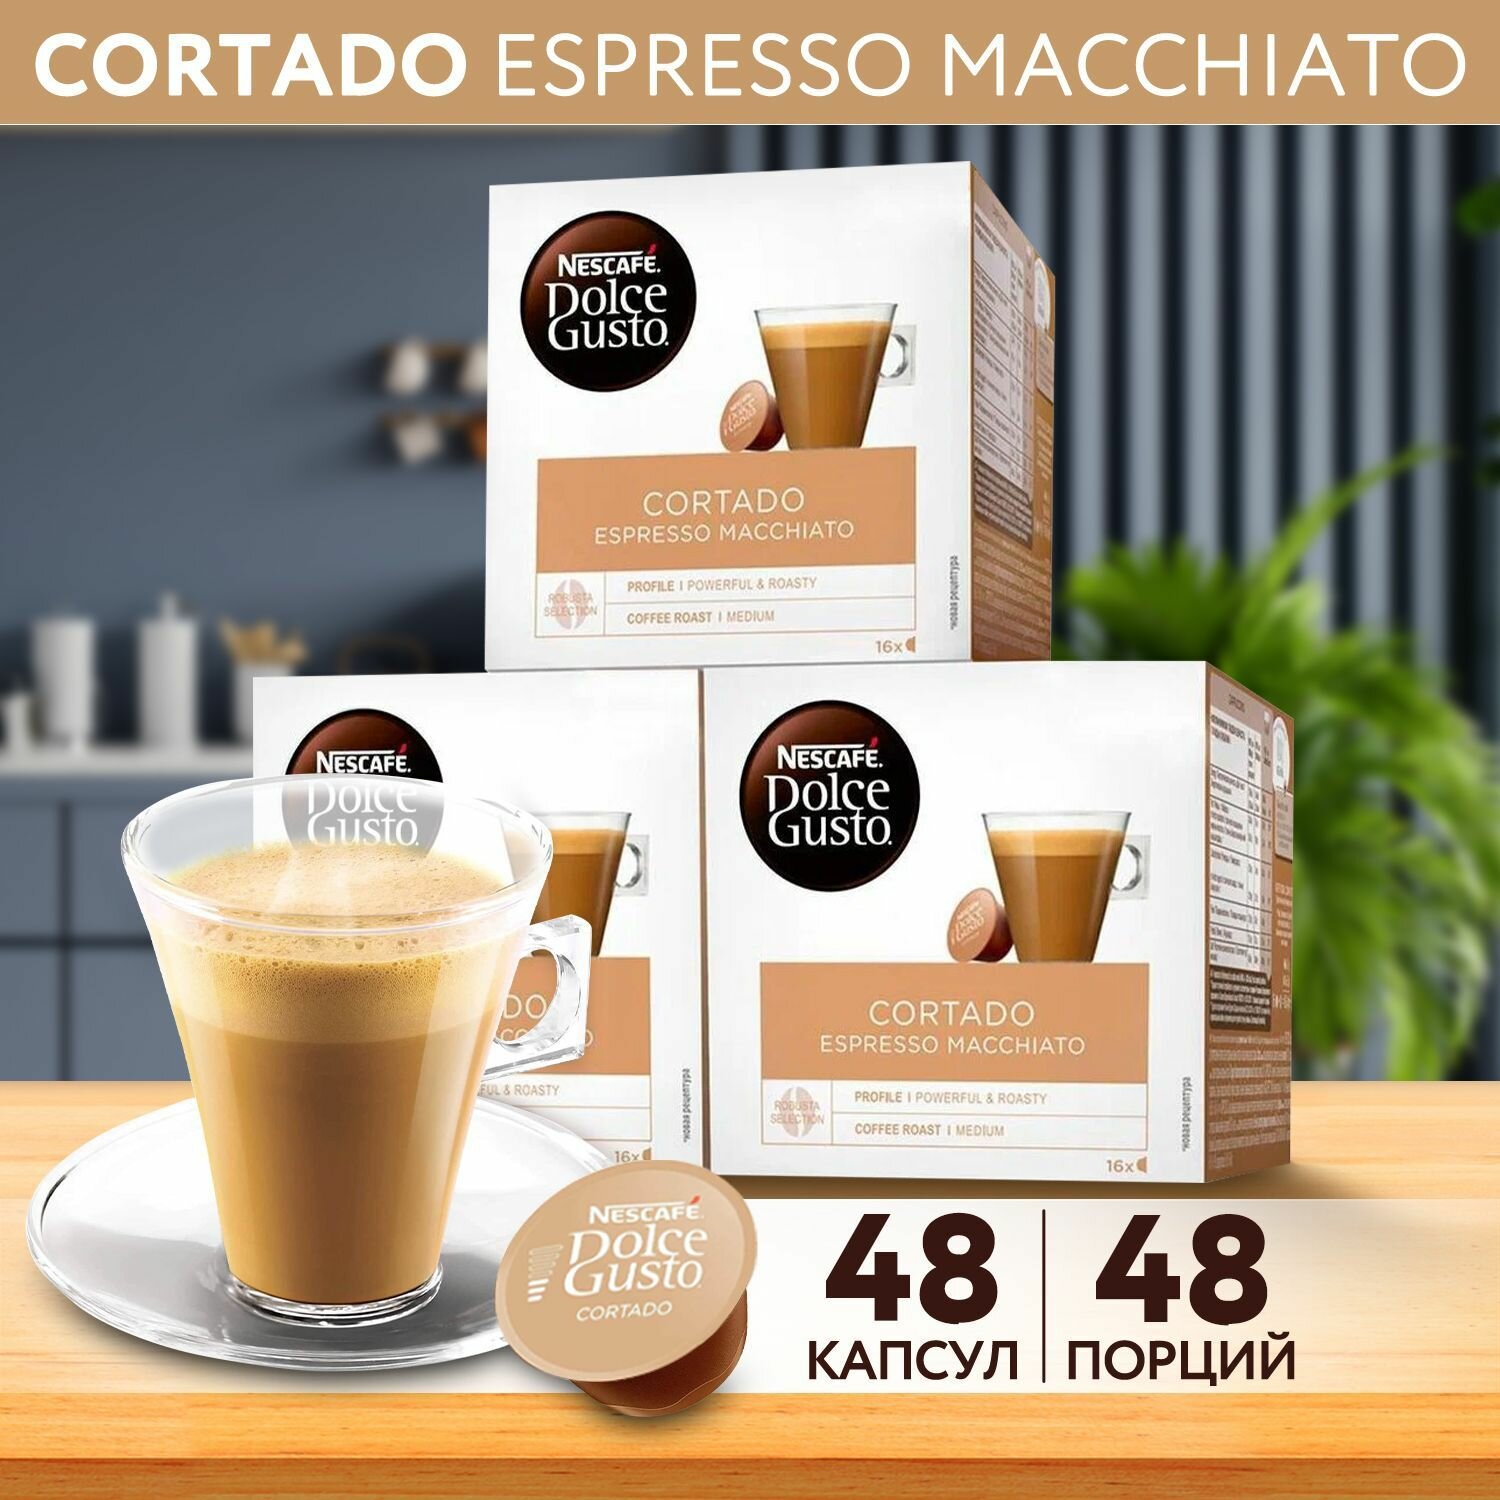 Кофе в капсулах Nescafe Dolce Gusto Cortado Espresso Macchiato, 48 капсул - 3 упаковки по 16 капсул